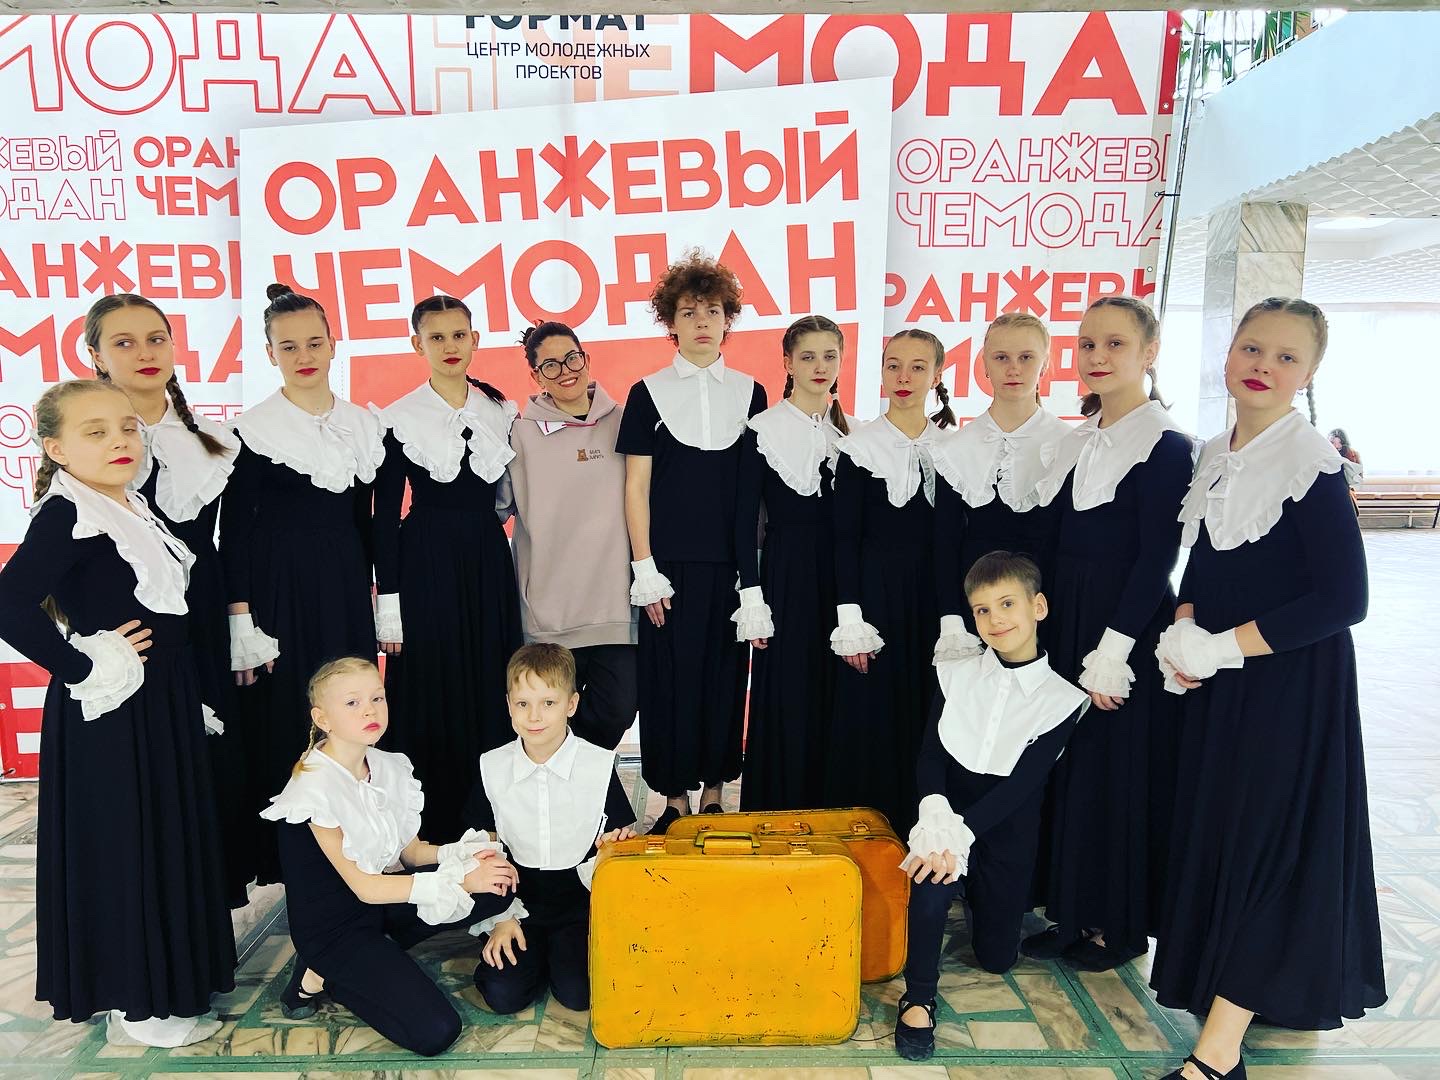 Всероссийский фестиваль творчества «Оранжевый чемодан».